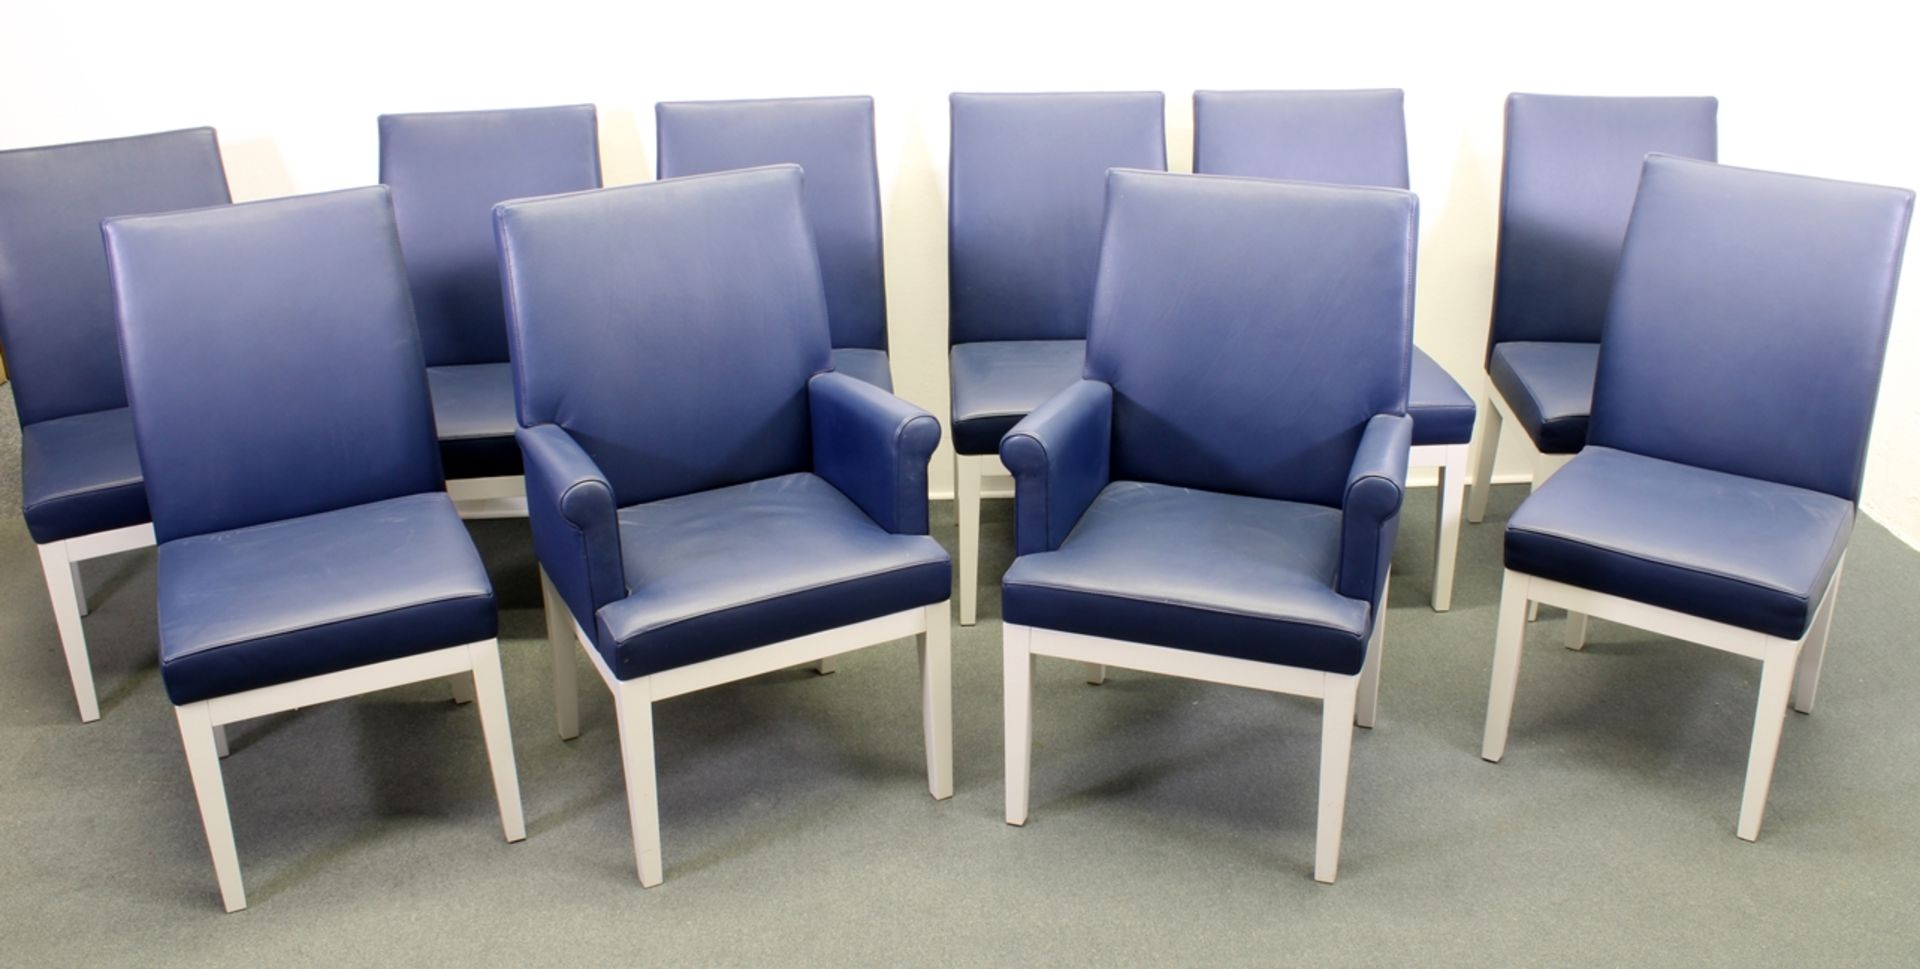 10 Stühle, DeSede DS 209, Schweiz 1999, Design von Jean Pierre Dovat, Polster Leder indigoblau, 8 S